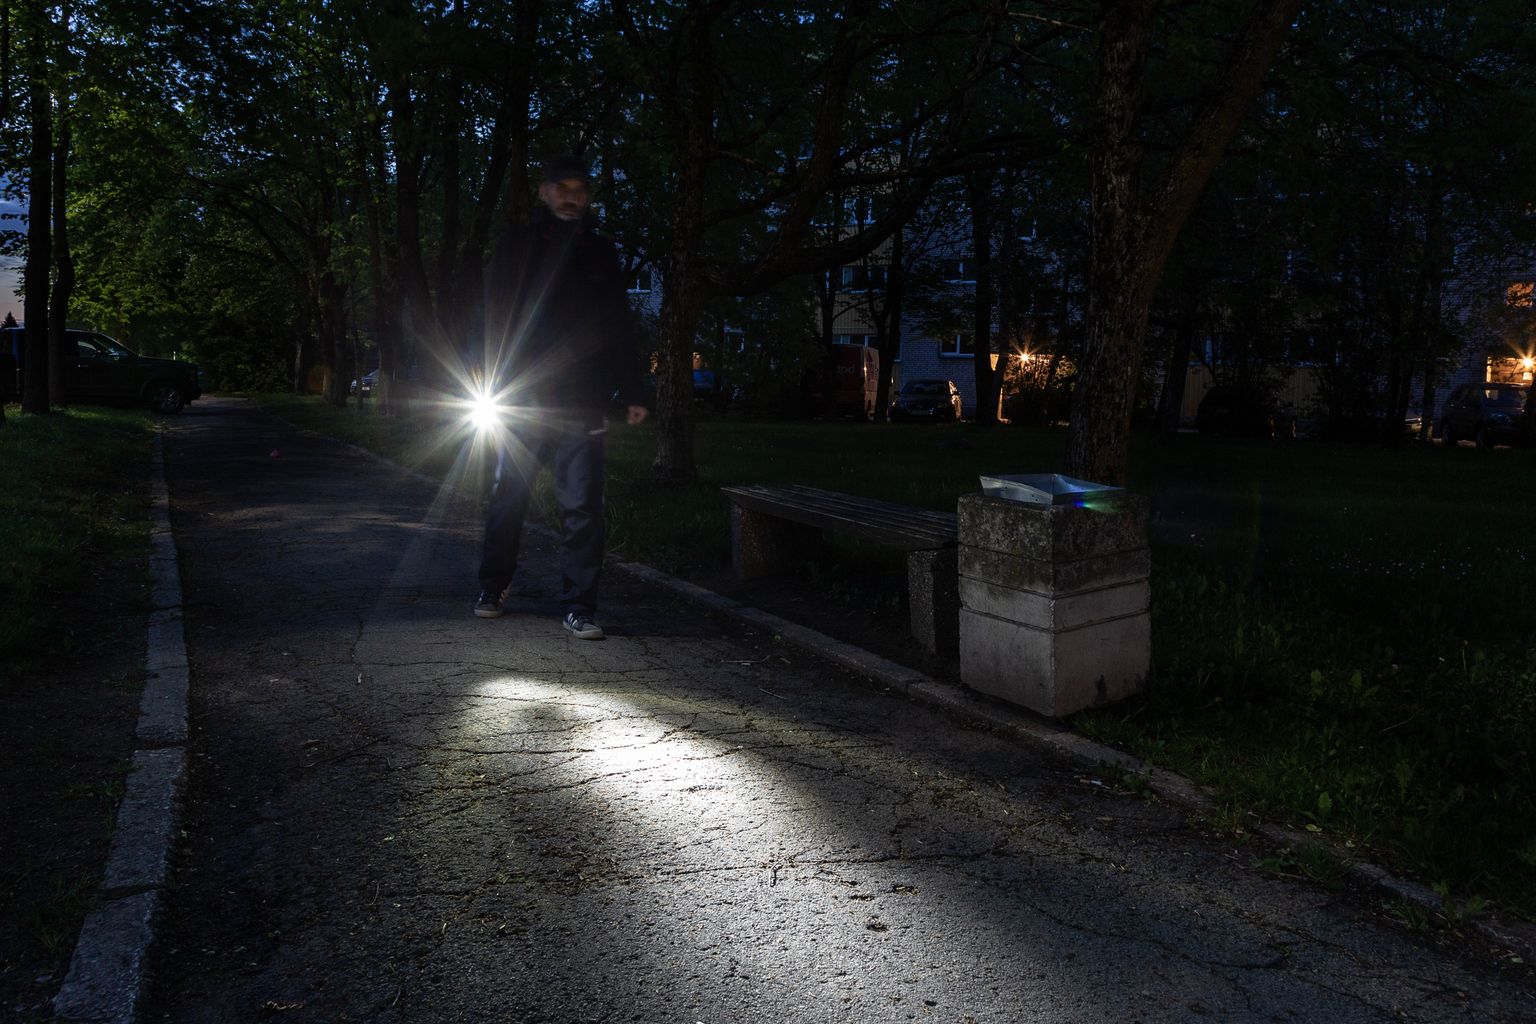 Кохтла-Ярвеское горуправление посоветовало людям для безопасного передвижения пользоваться фонариком на темных городских улицах и по возможности ходить вместе с кем-нибудь.